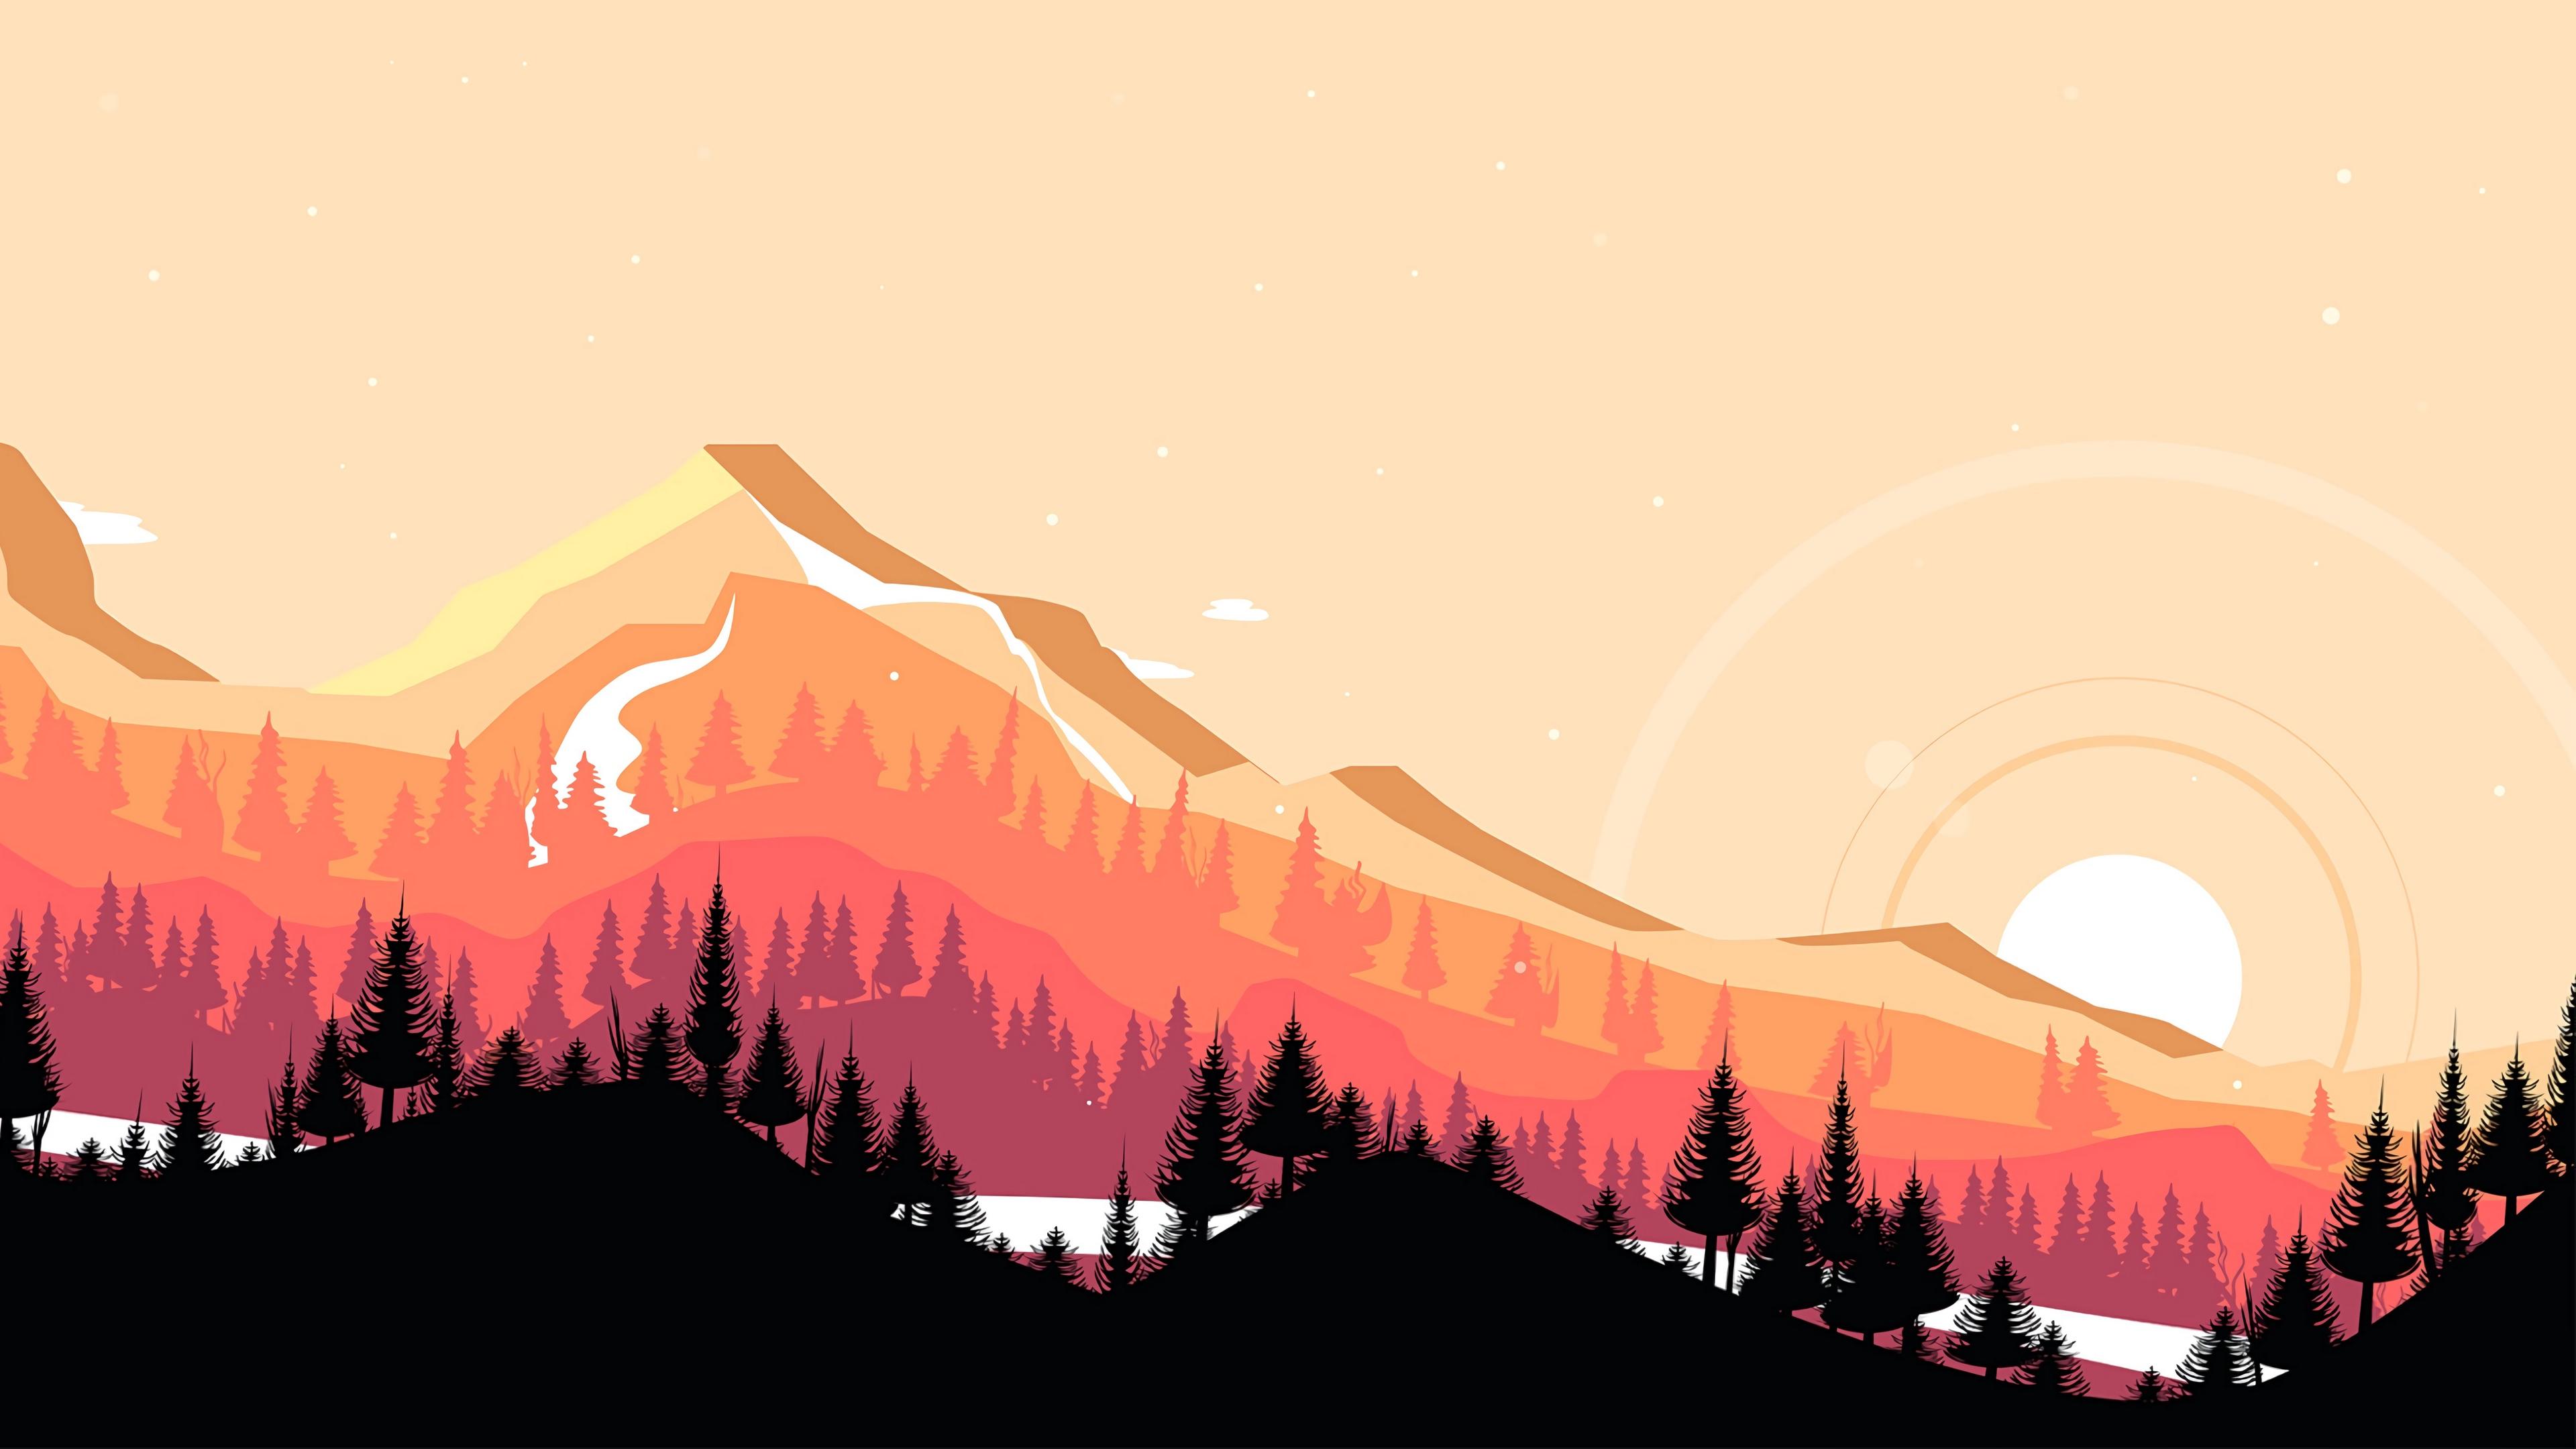 Download wallpaper 3840x2160 mountains, sunset, art, vector